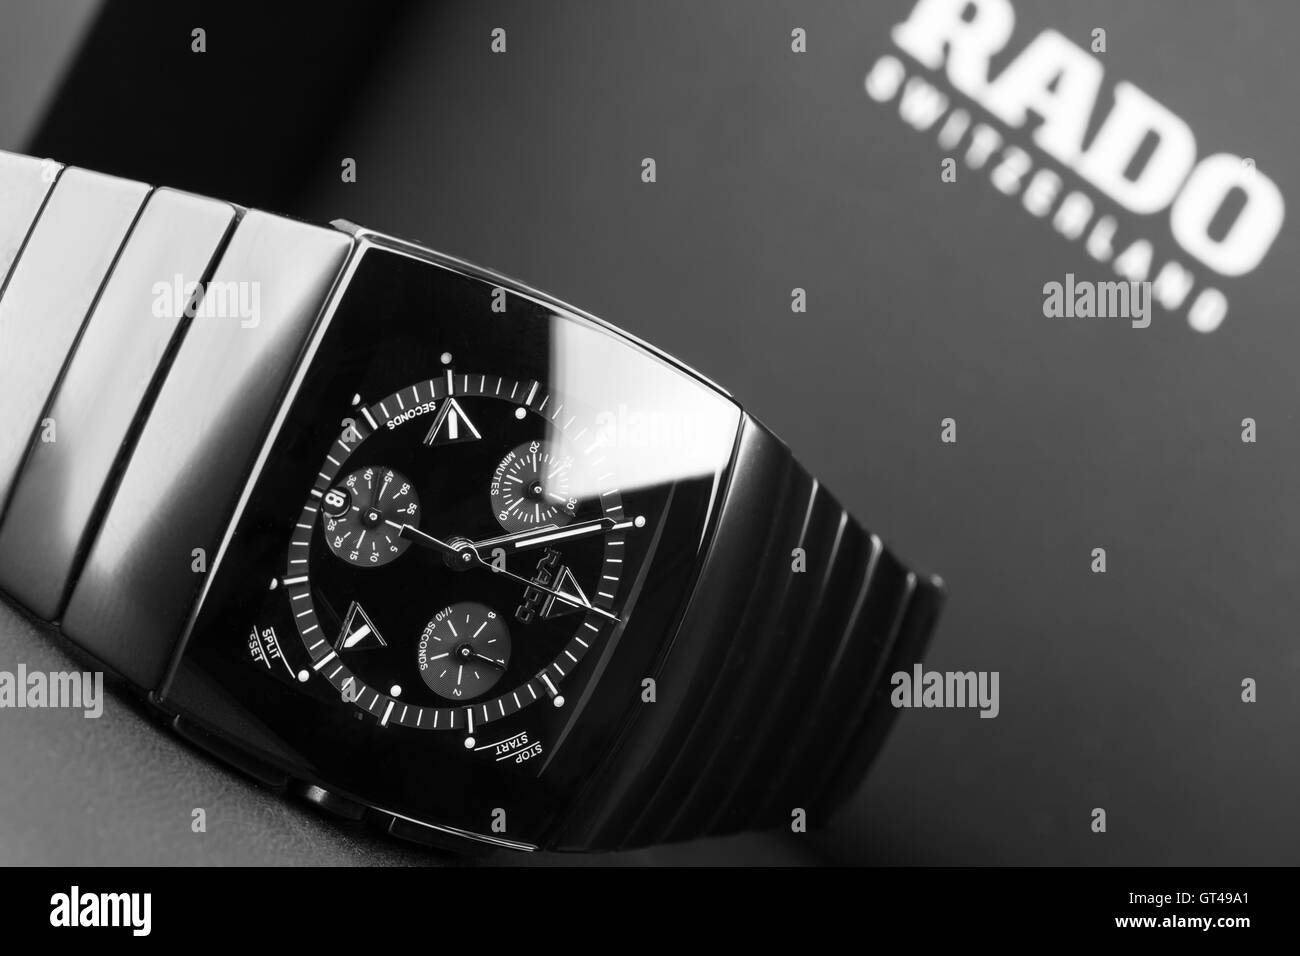 Saint-pétersbourg, Russie - le 18 juin 2015 : Rado Sintra Chrono Montre chronographe pour hommes, fait de la céramique high-tech avec sapphire gl Banque D'Images